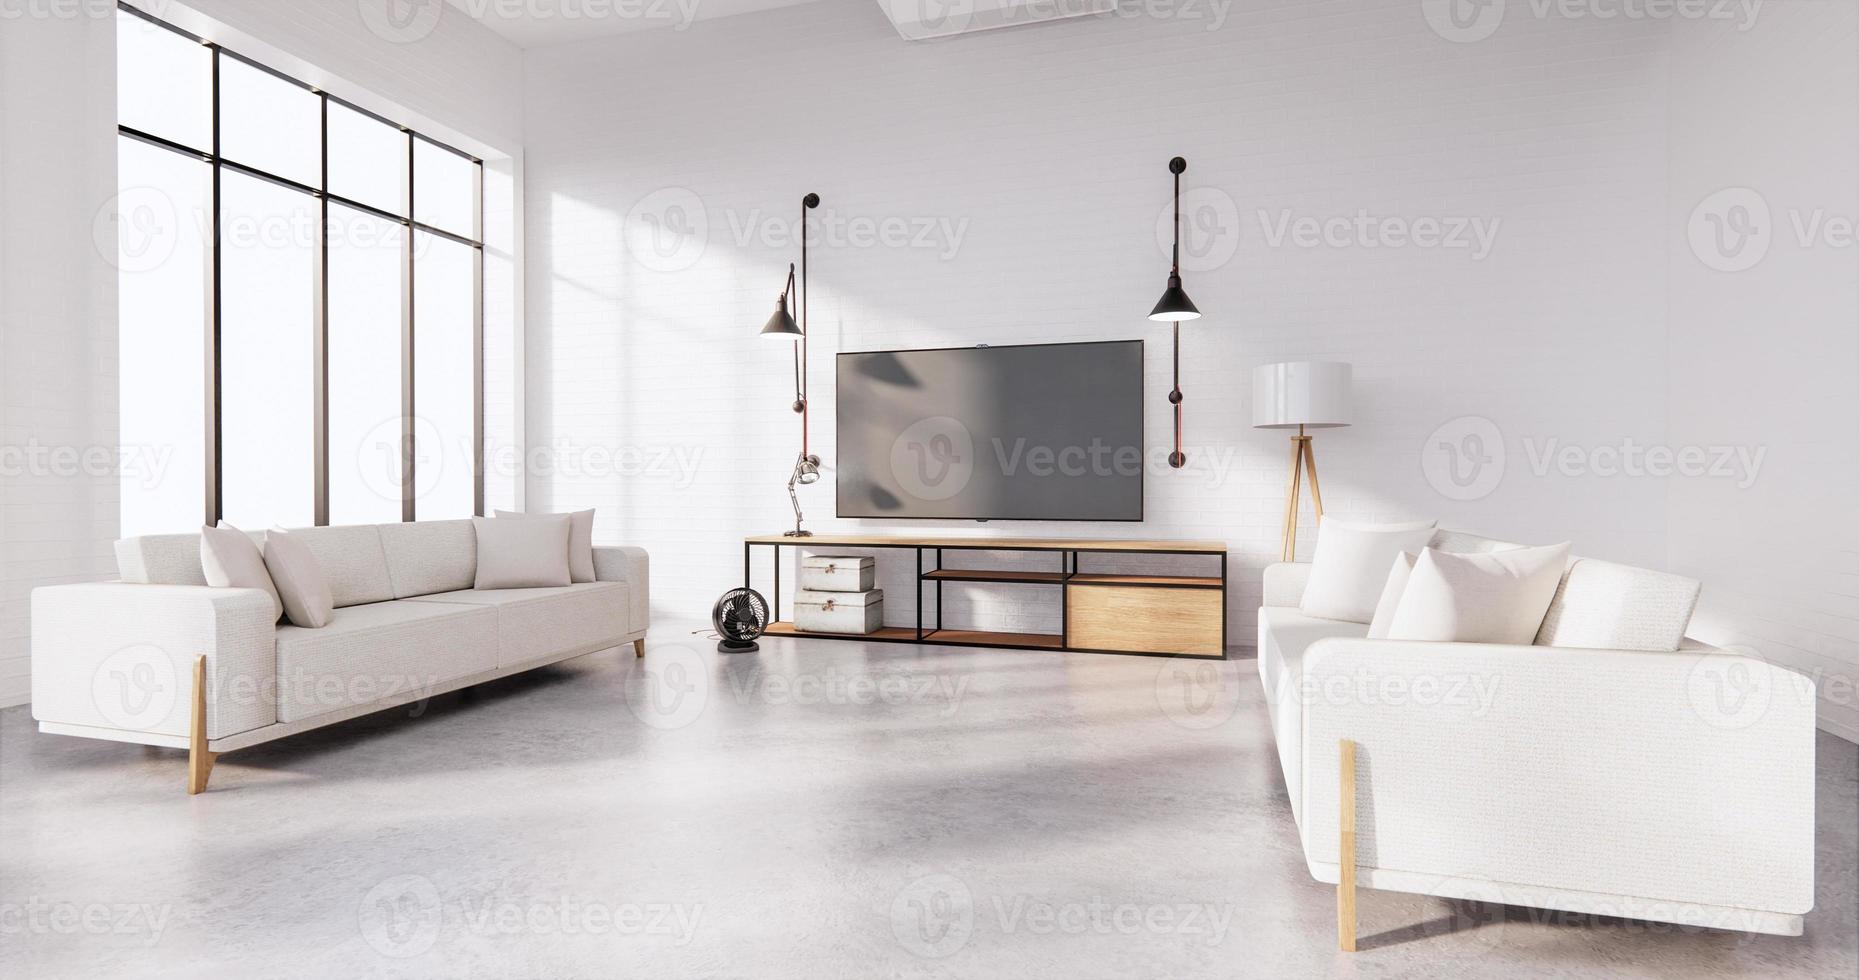 Smart TV en el gabinete en la sala de estar estilo loft con pared de ladrillo blanco sobre piso de madera y sofá sillón. Representación 3D foto